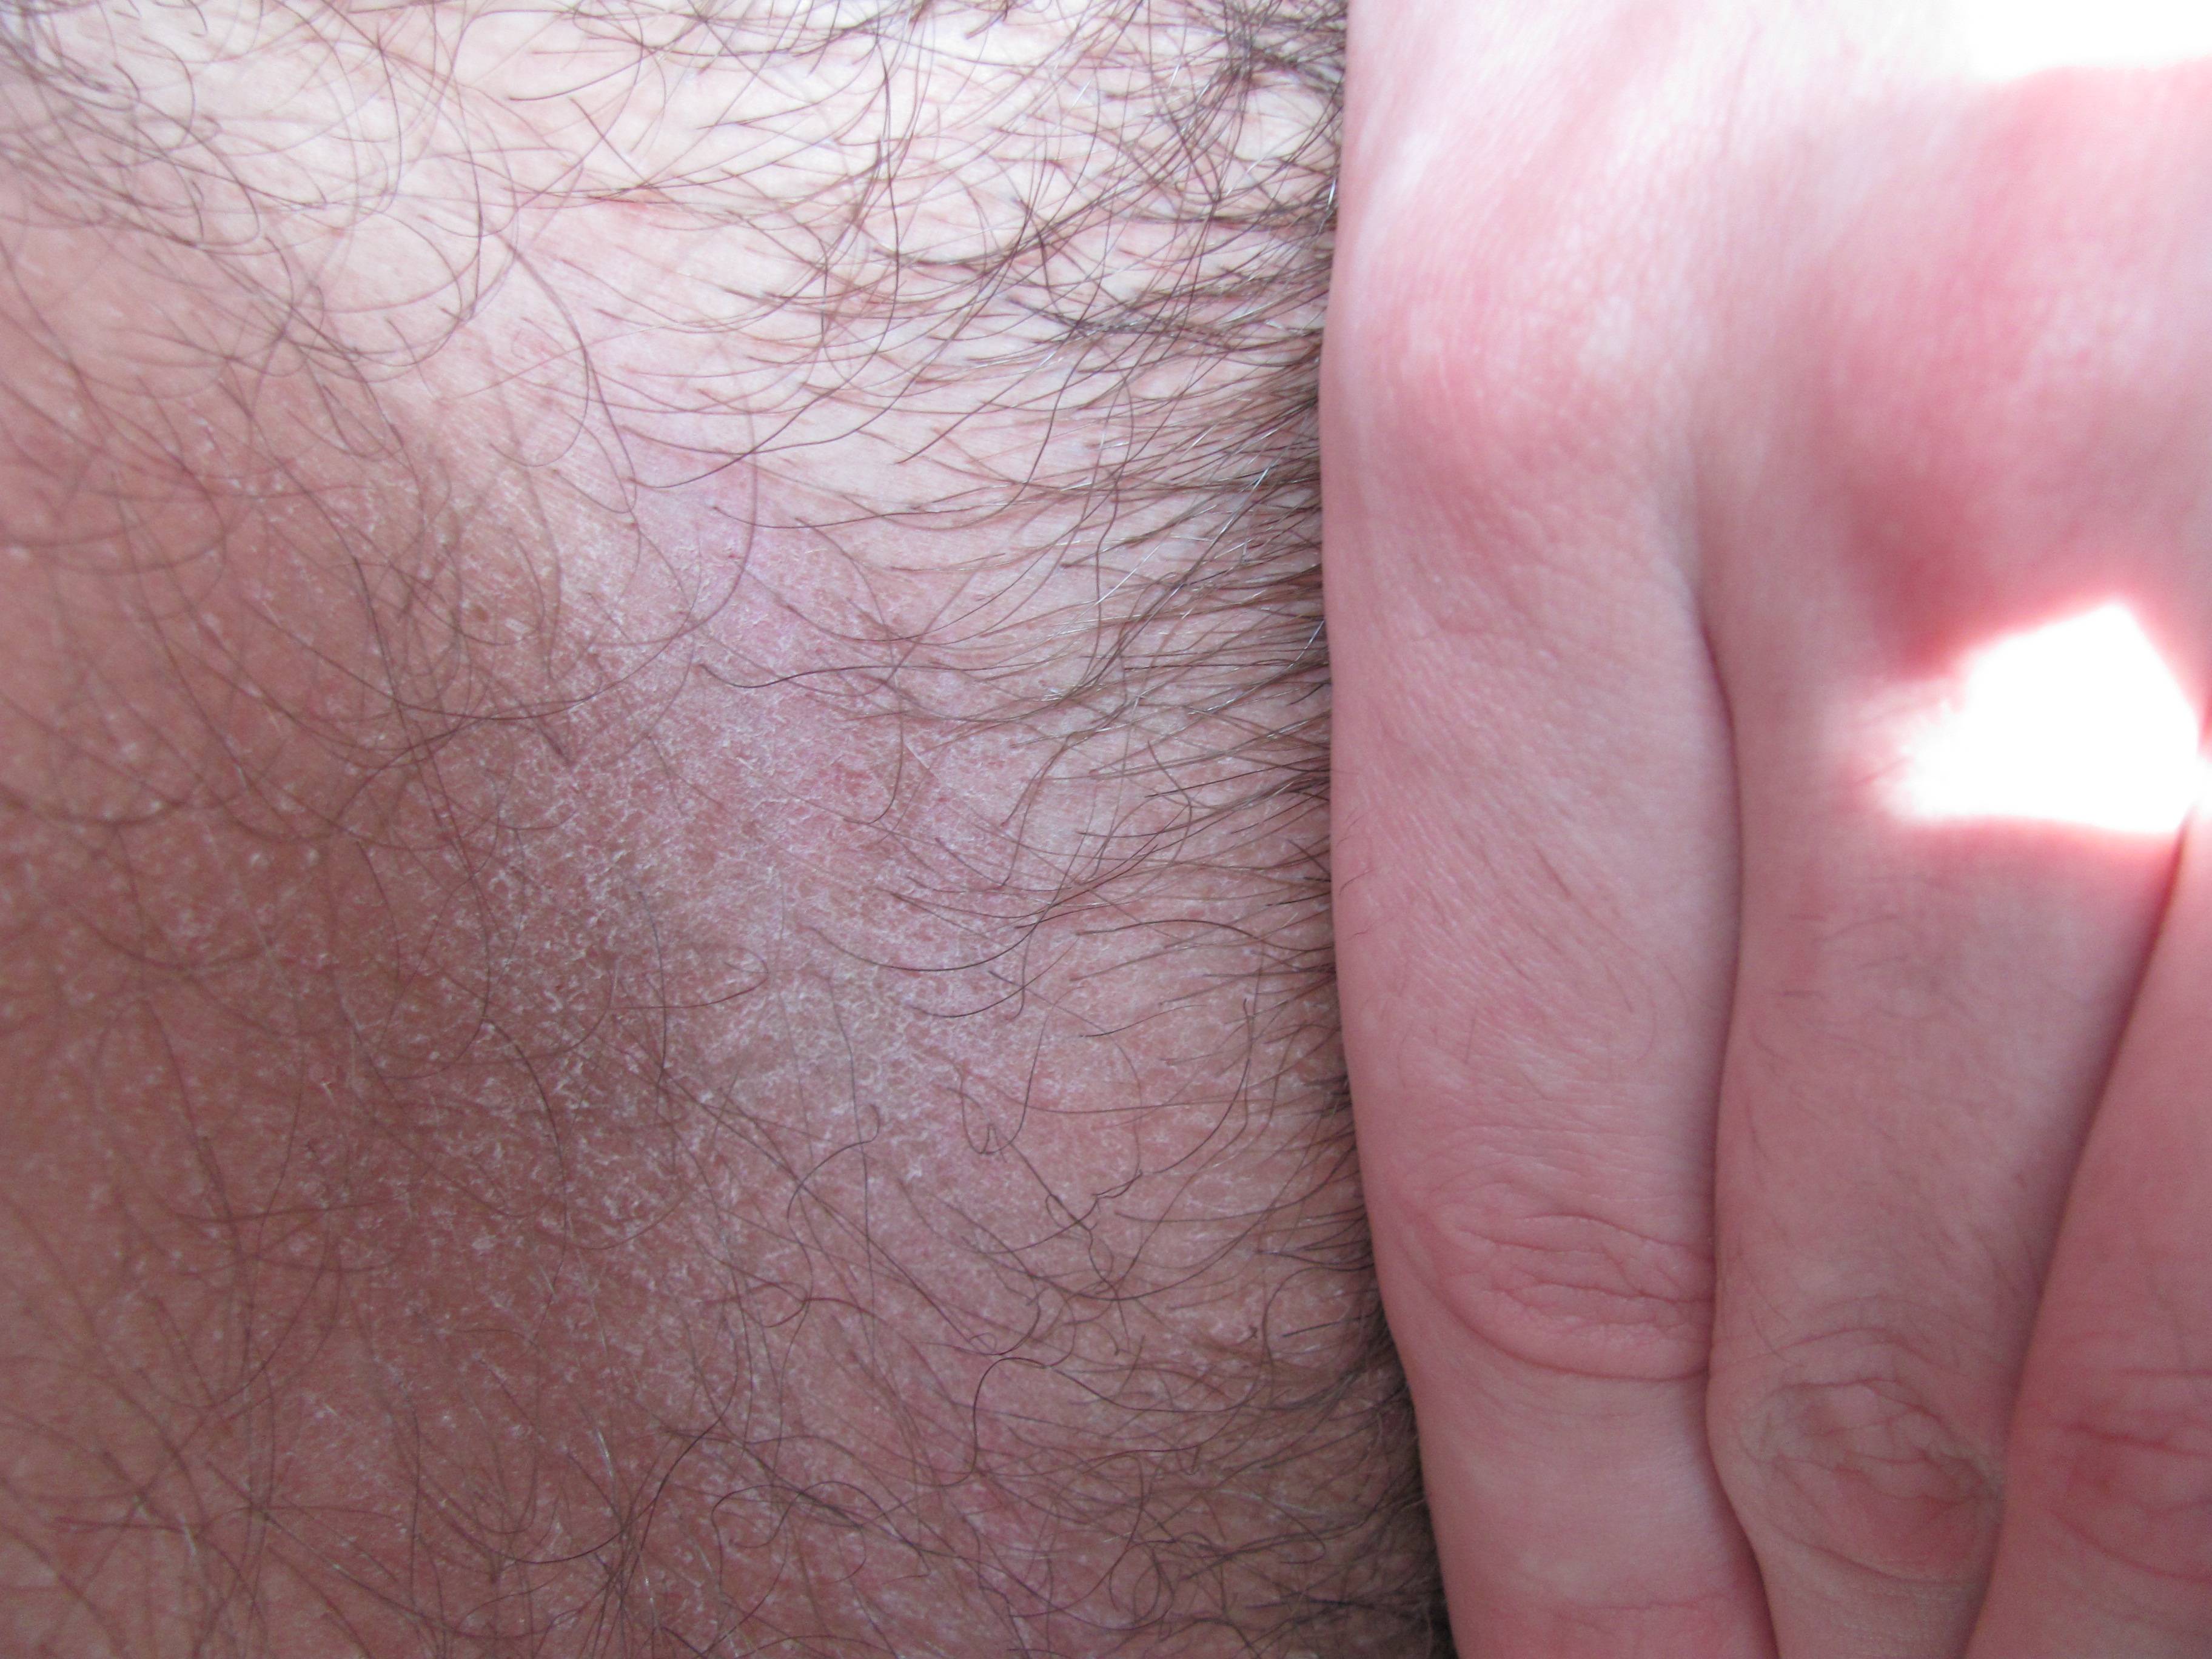 грибок на члене у мужчин лечение фото 52